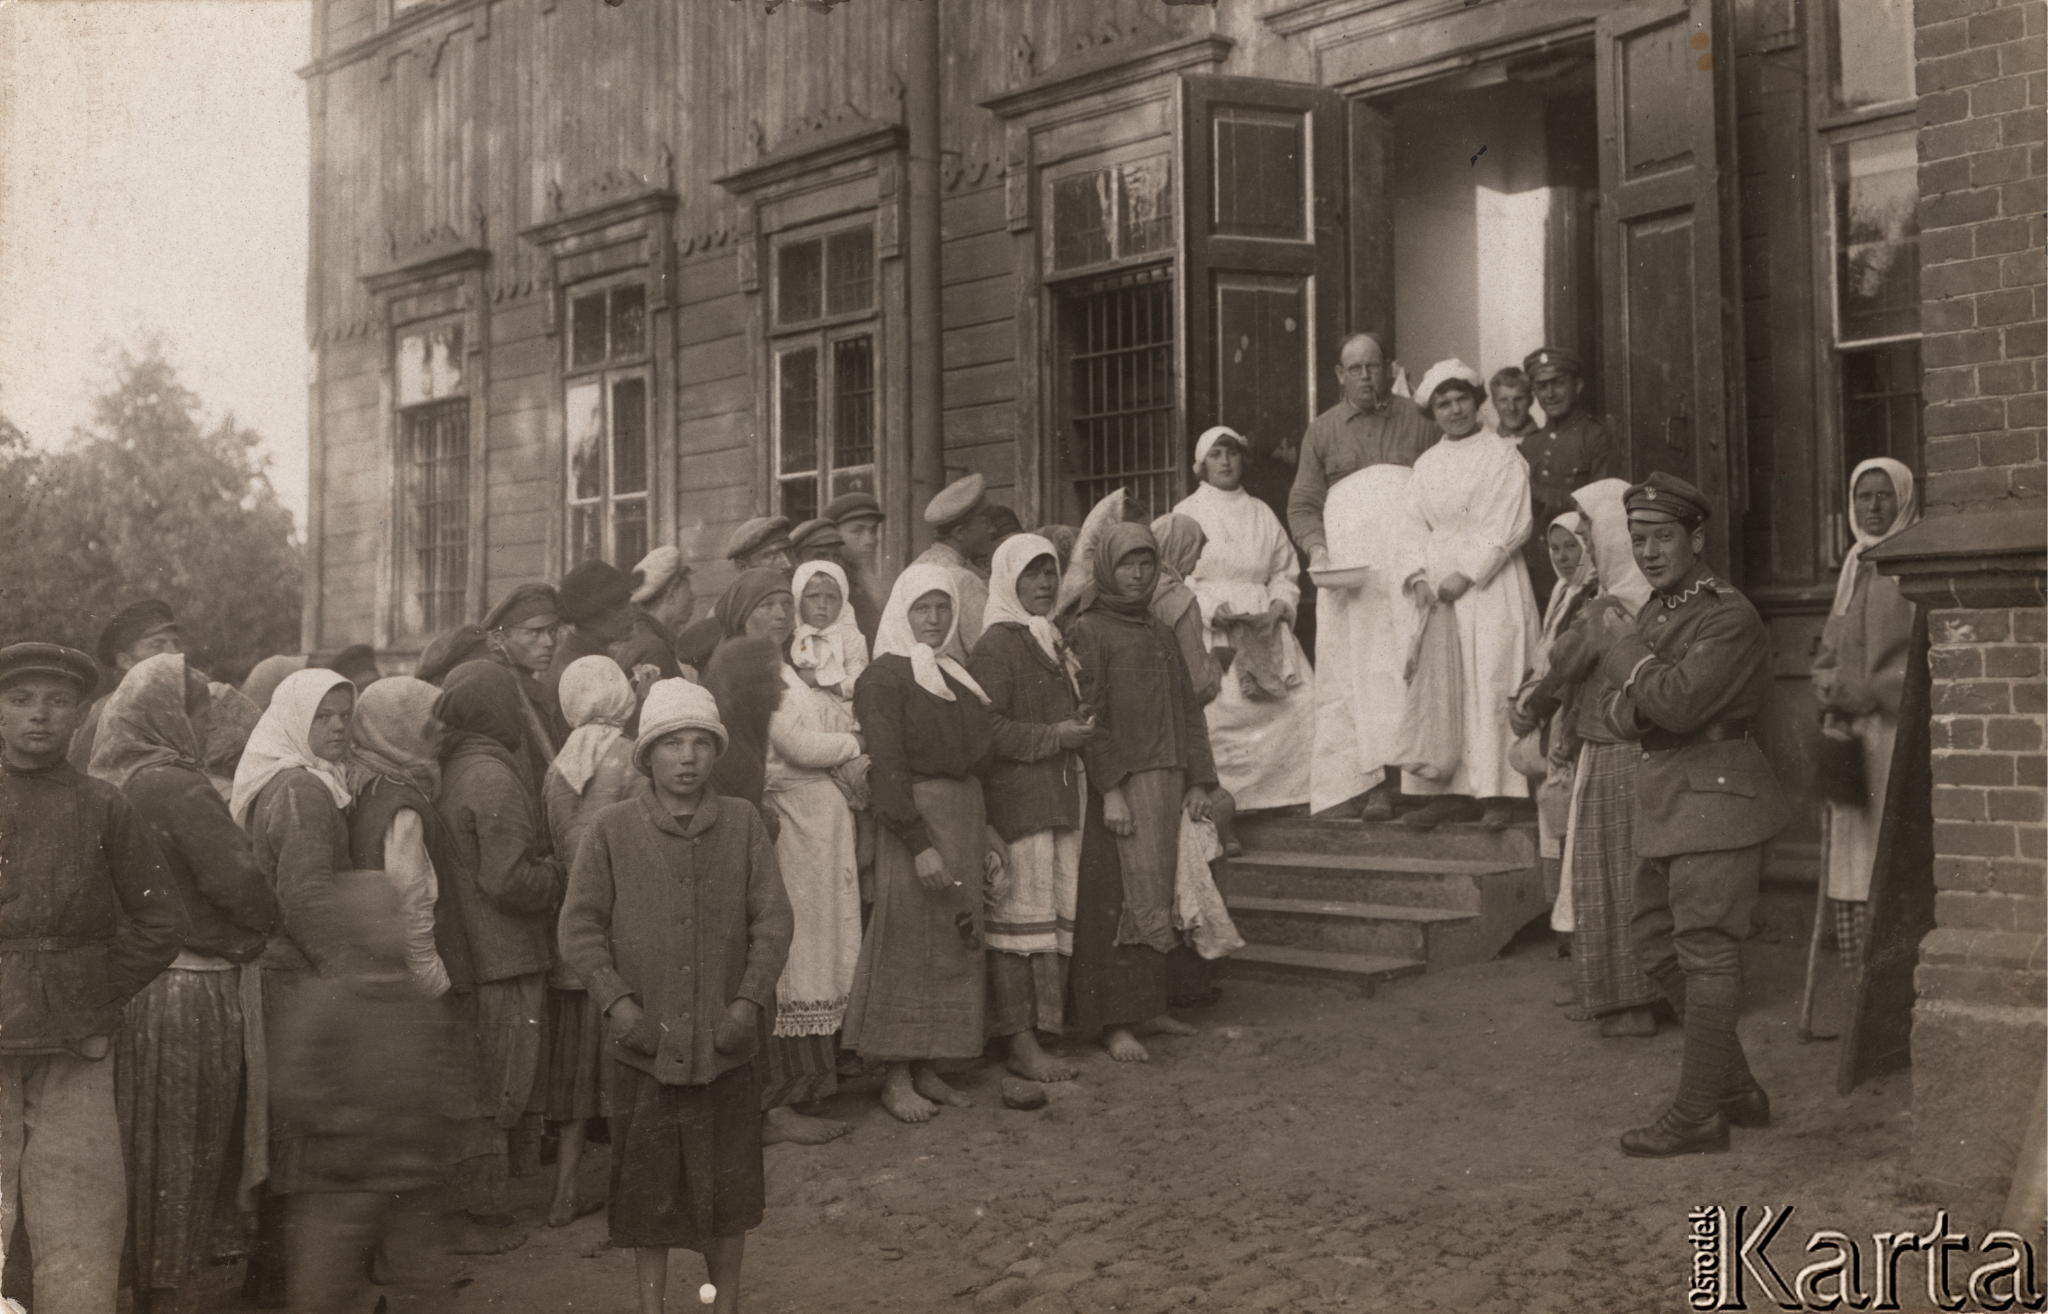 1920. Amerykańska Misja Pomocy – rozdawanie mąki ludności cywilnej. Źródło: Ośrodek KARTA